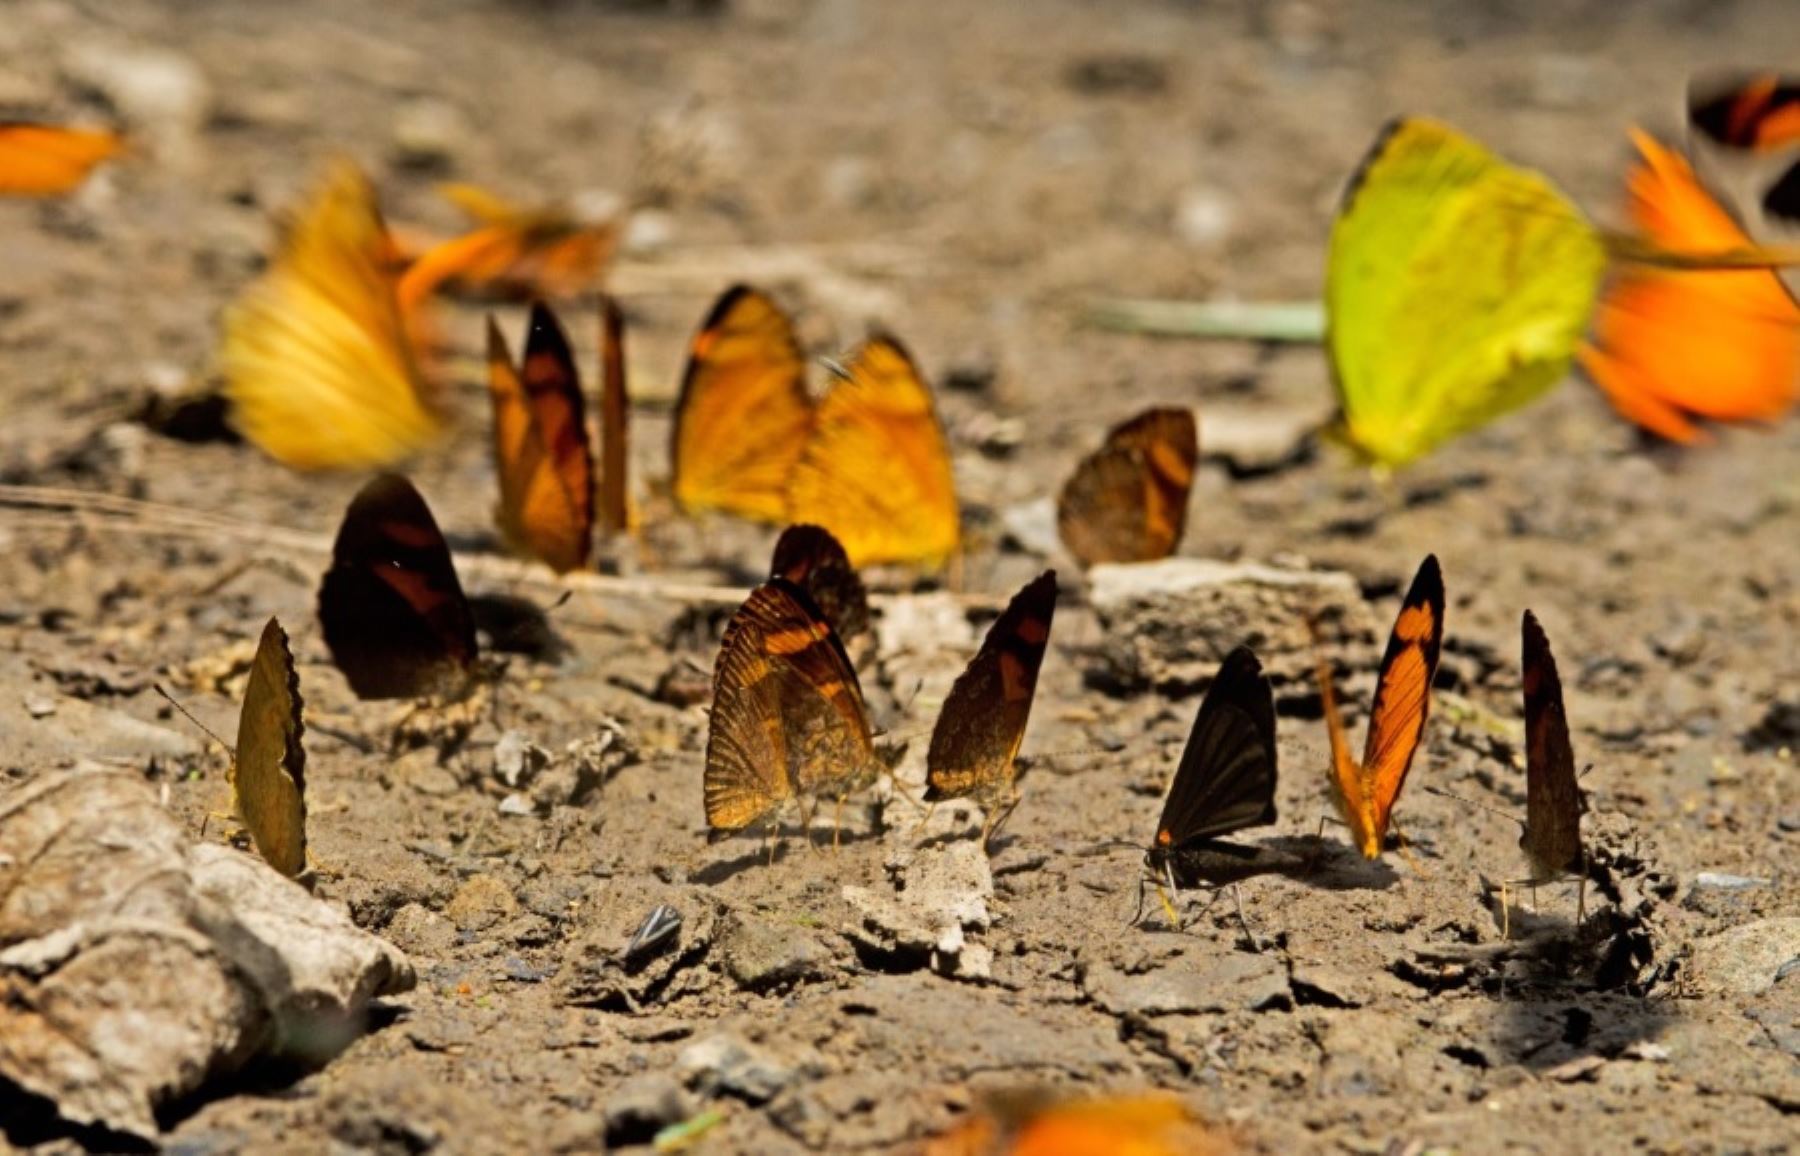 Inventario preliminar revela más de 150 especies de mariposas en Parque Nacional Sierra del Divisor